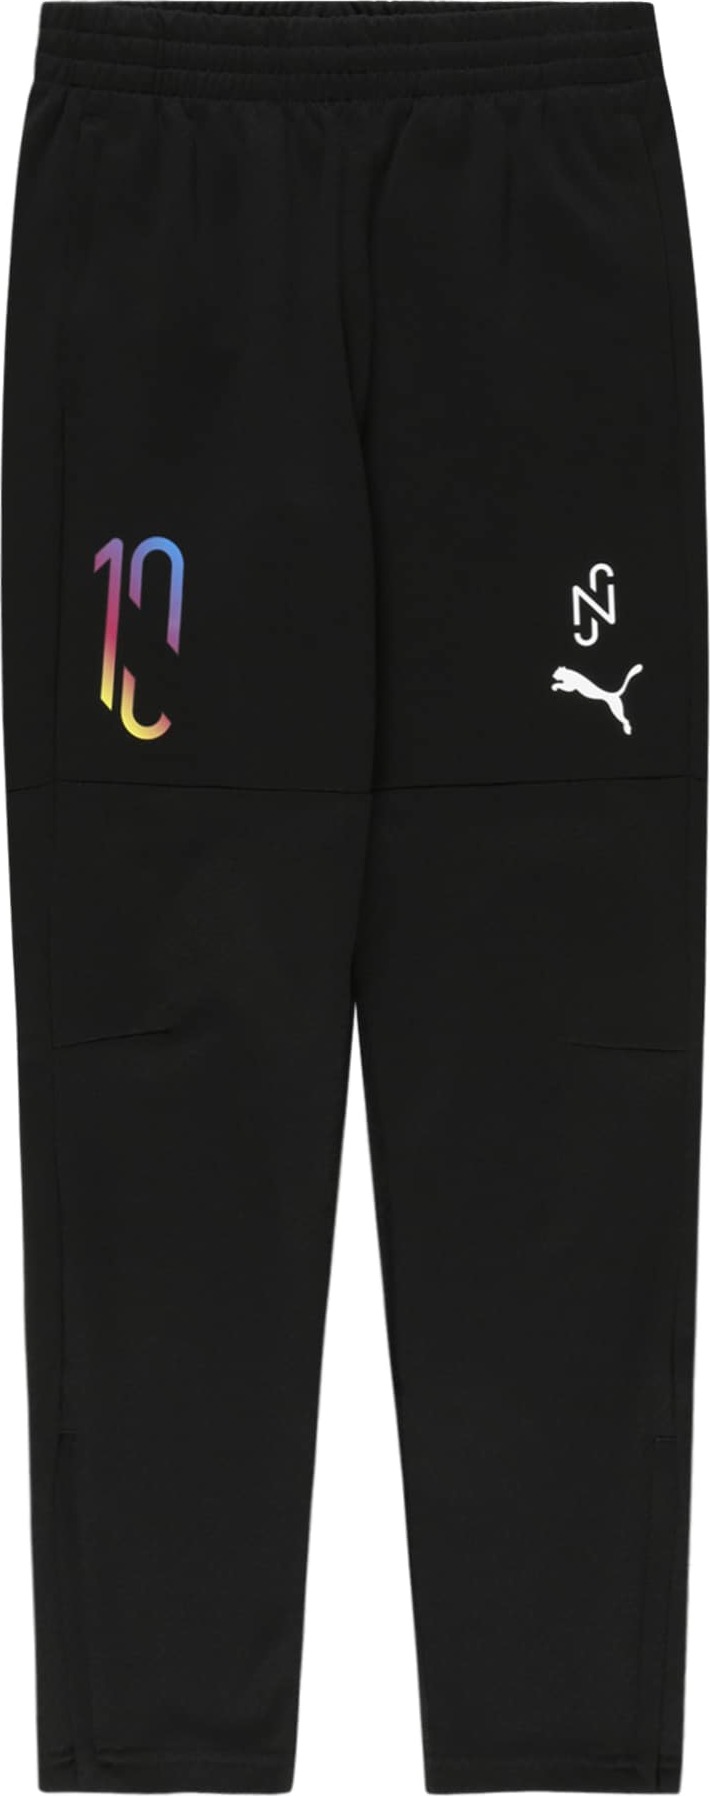 PUMA Sportovní kalhoty černá / mix barev / bílá